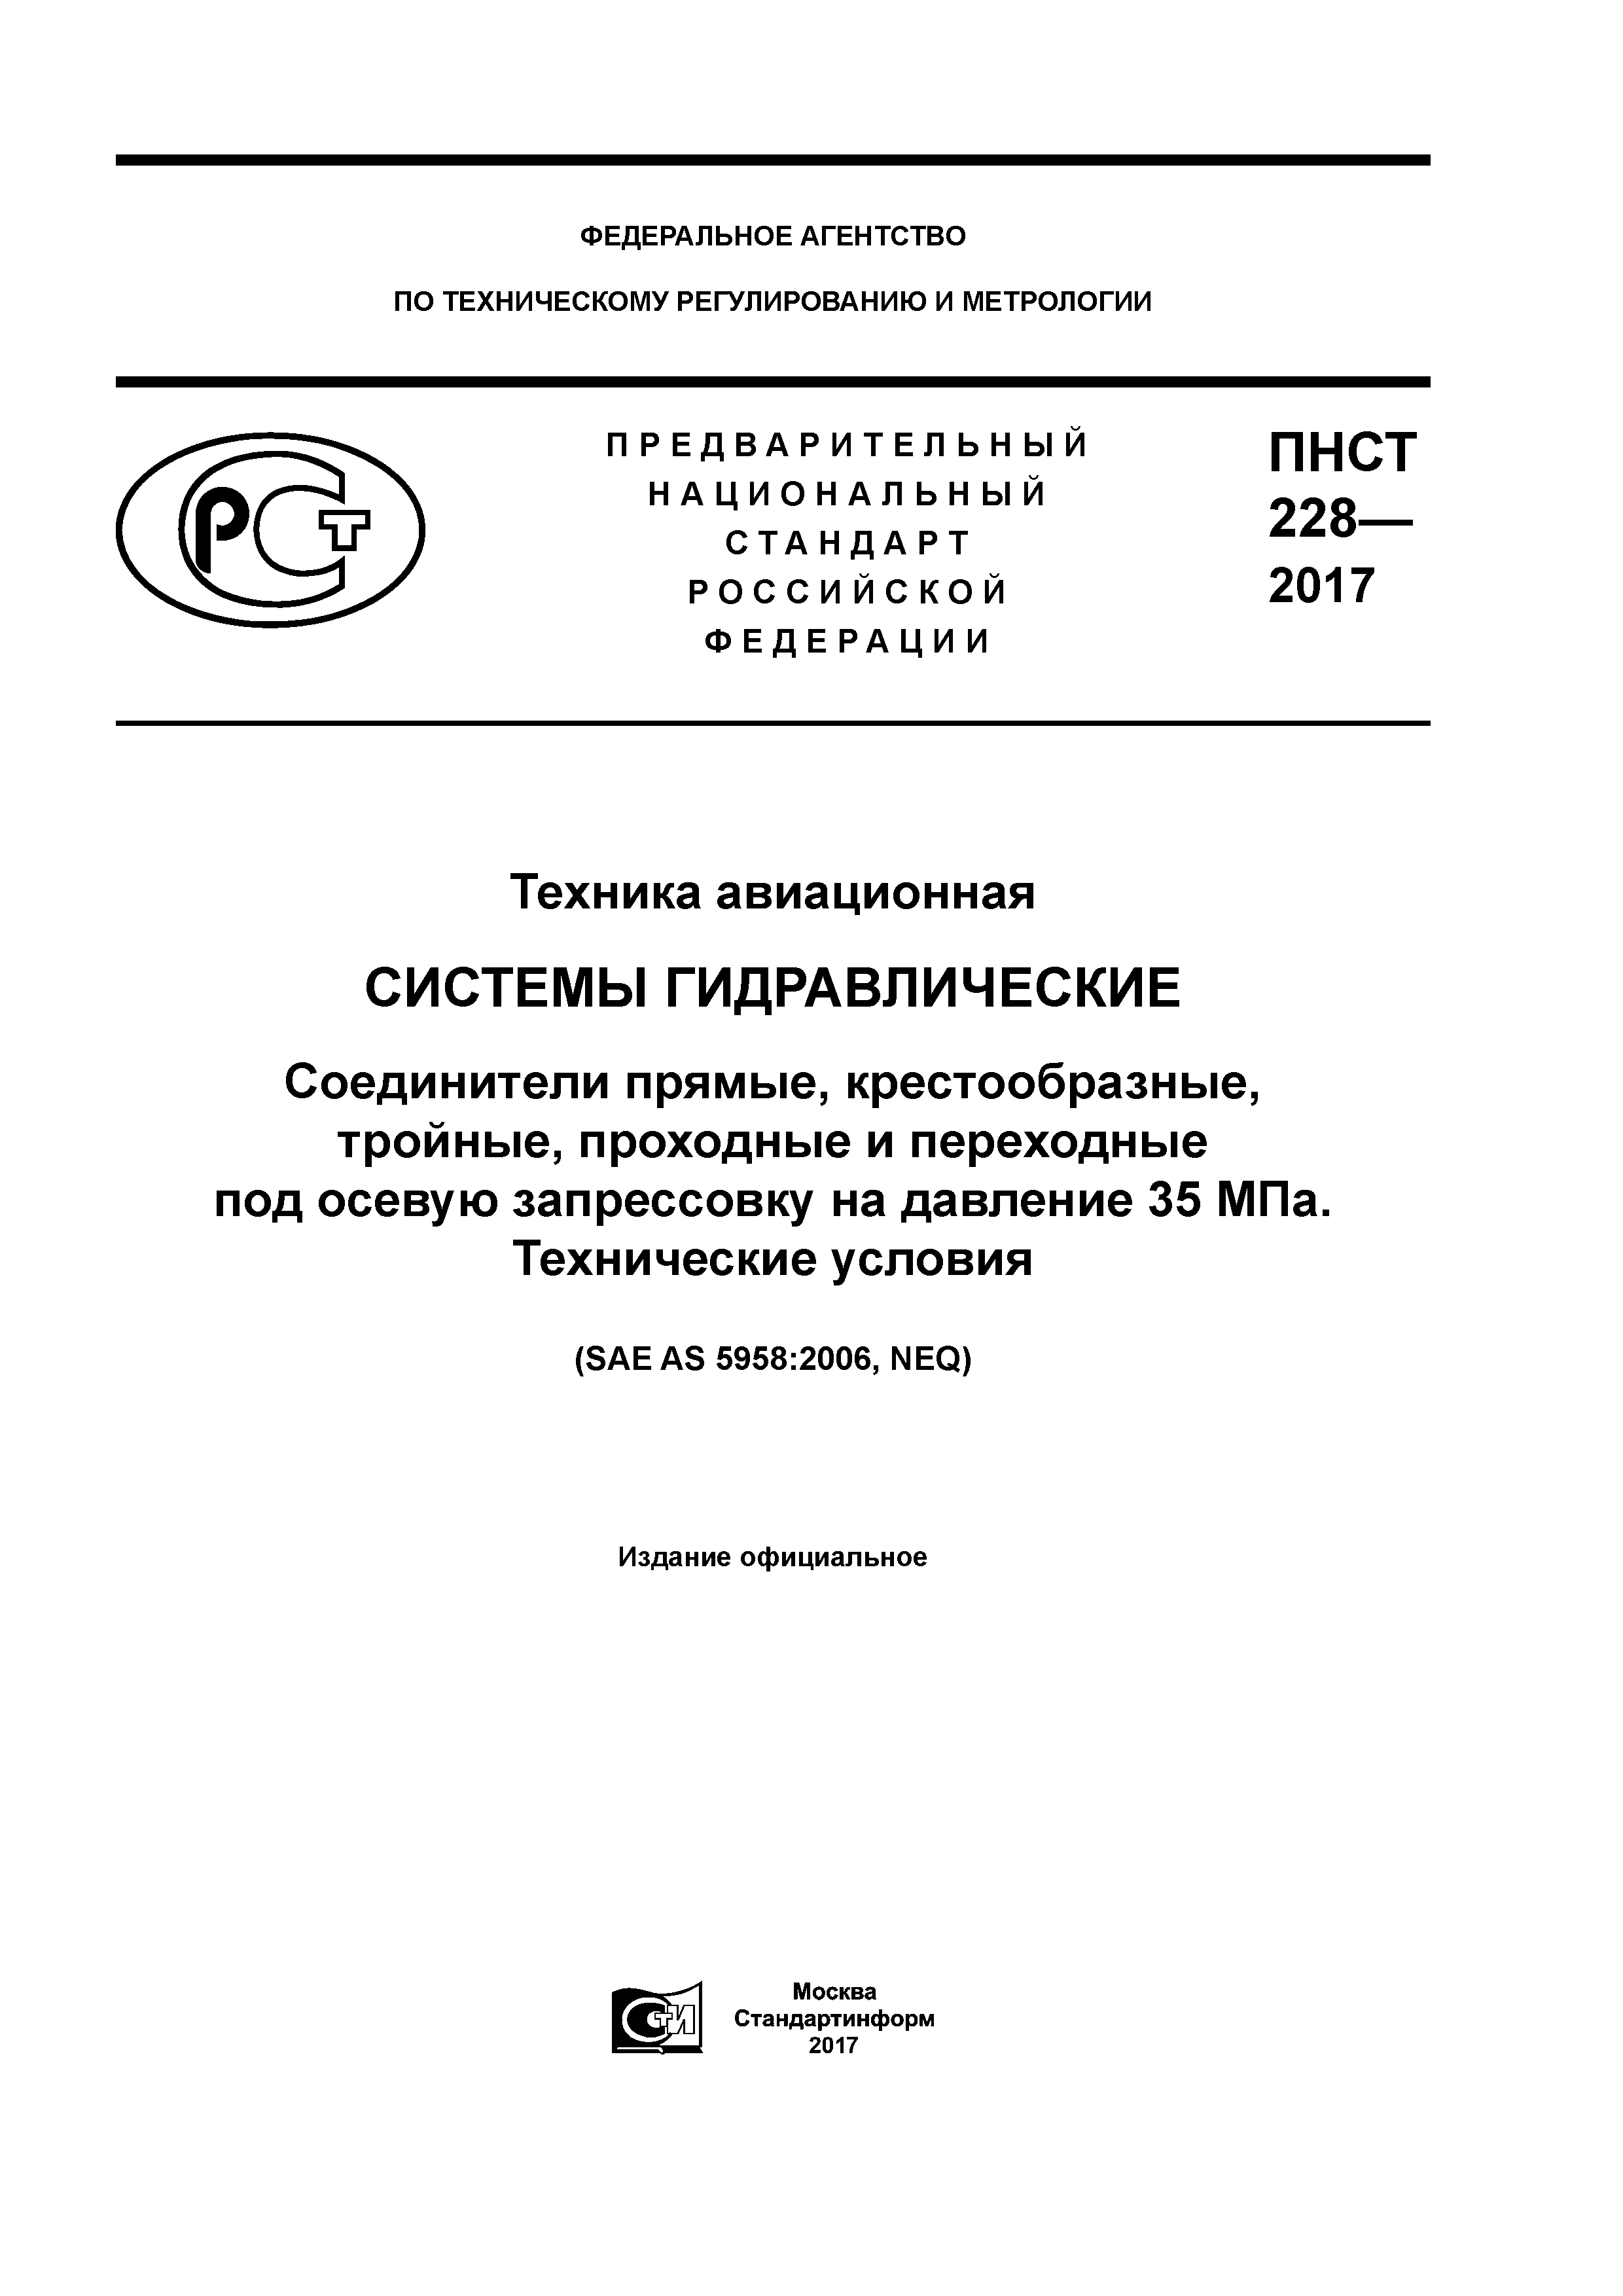 ПНСТ 228-2017